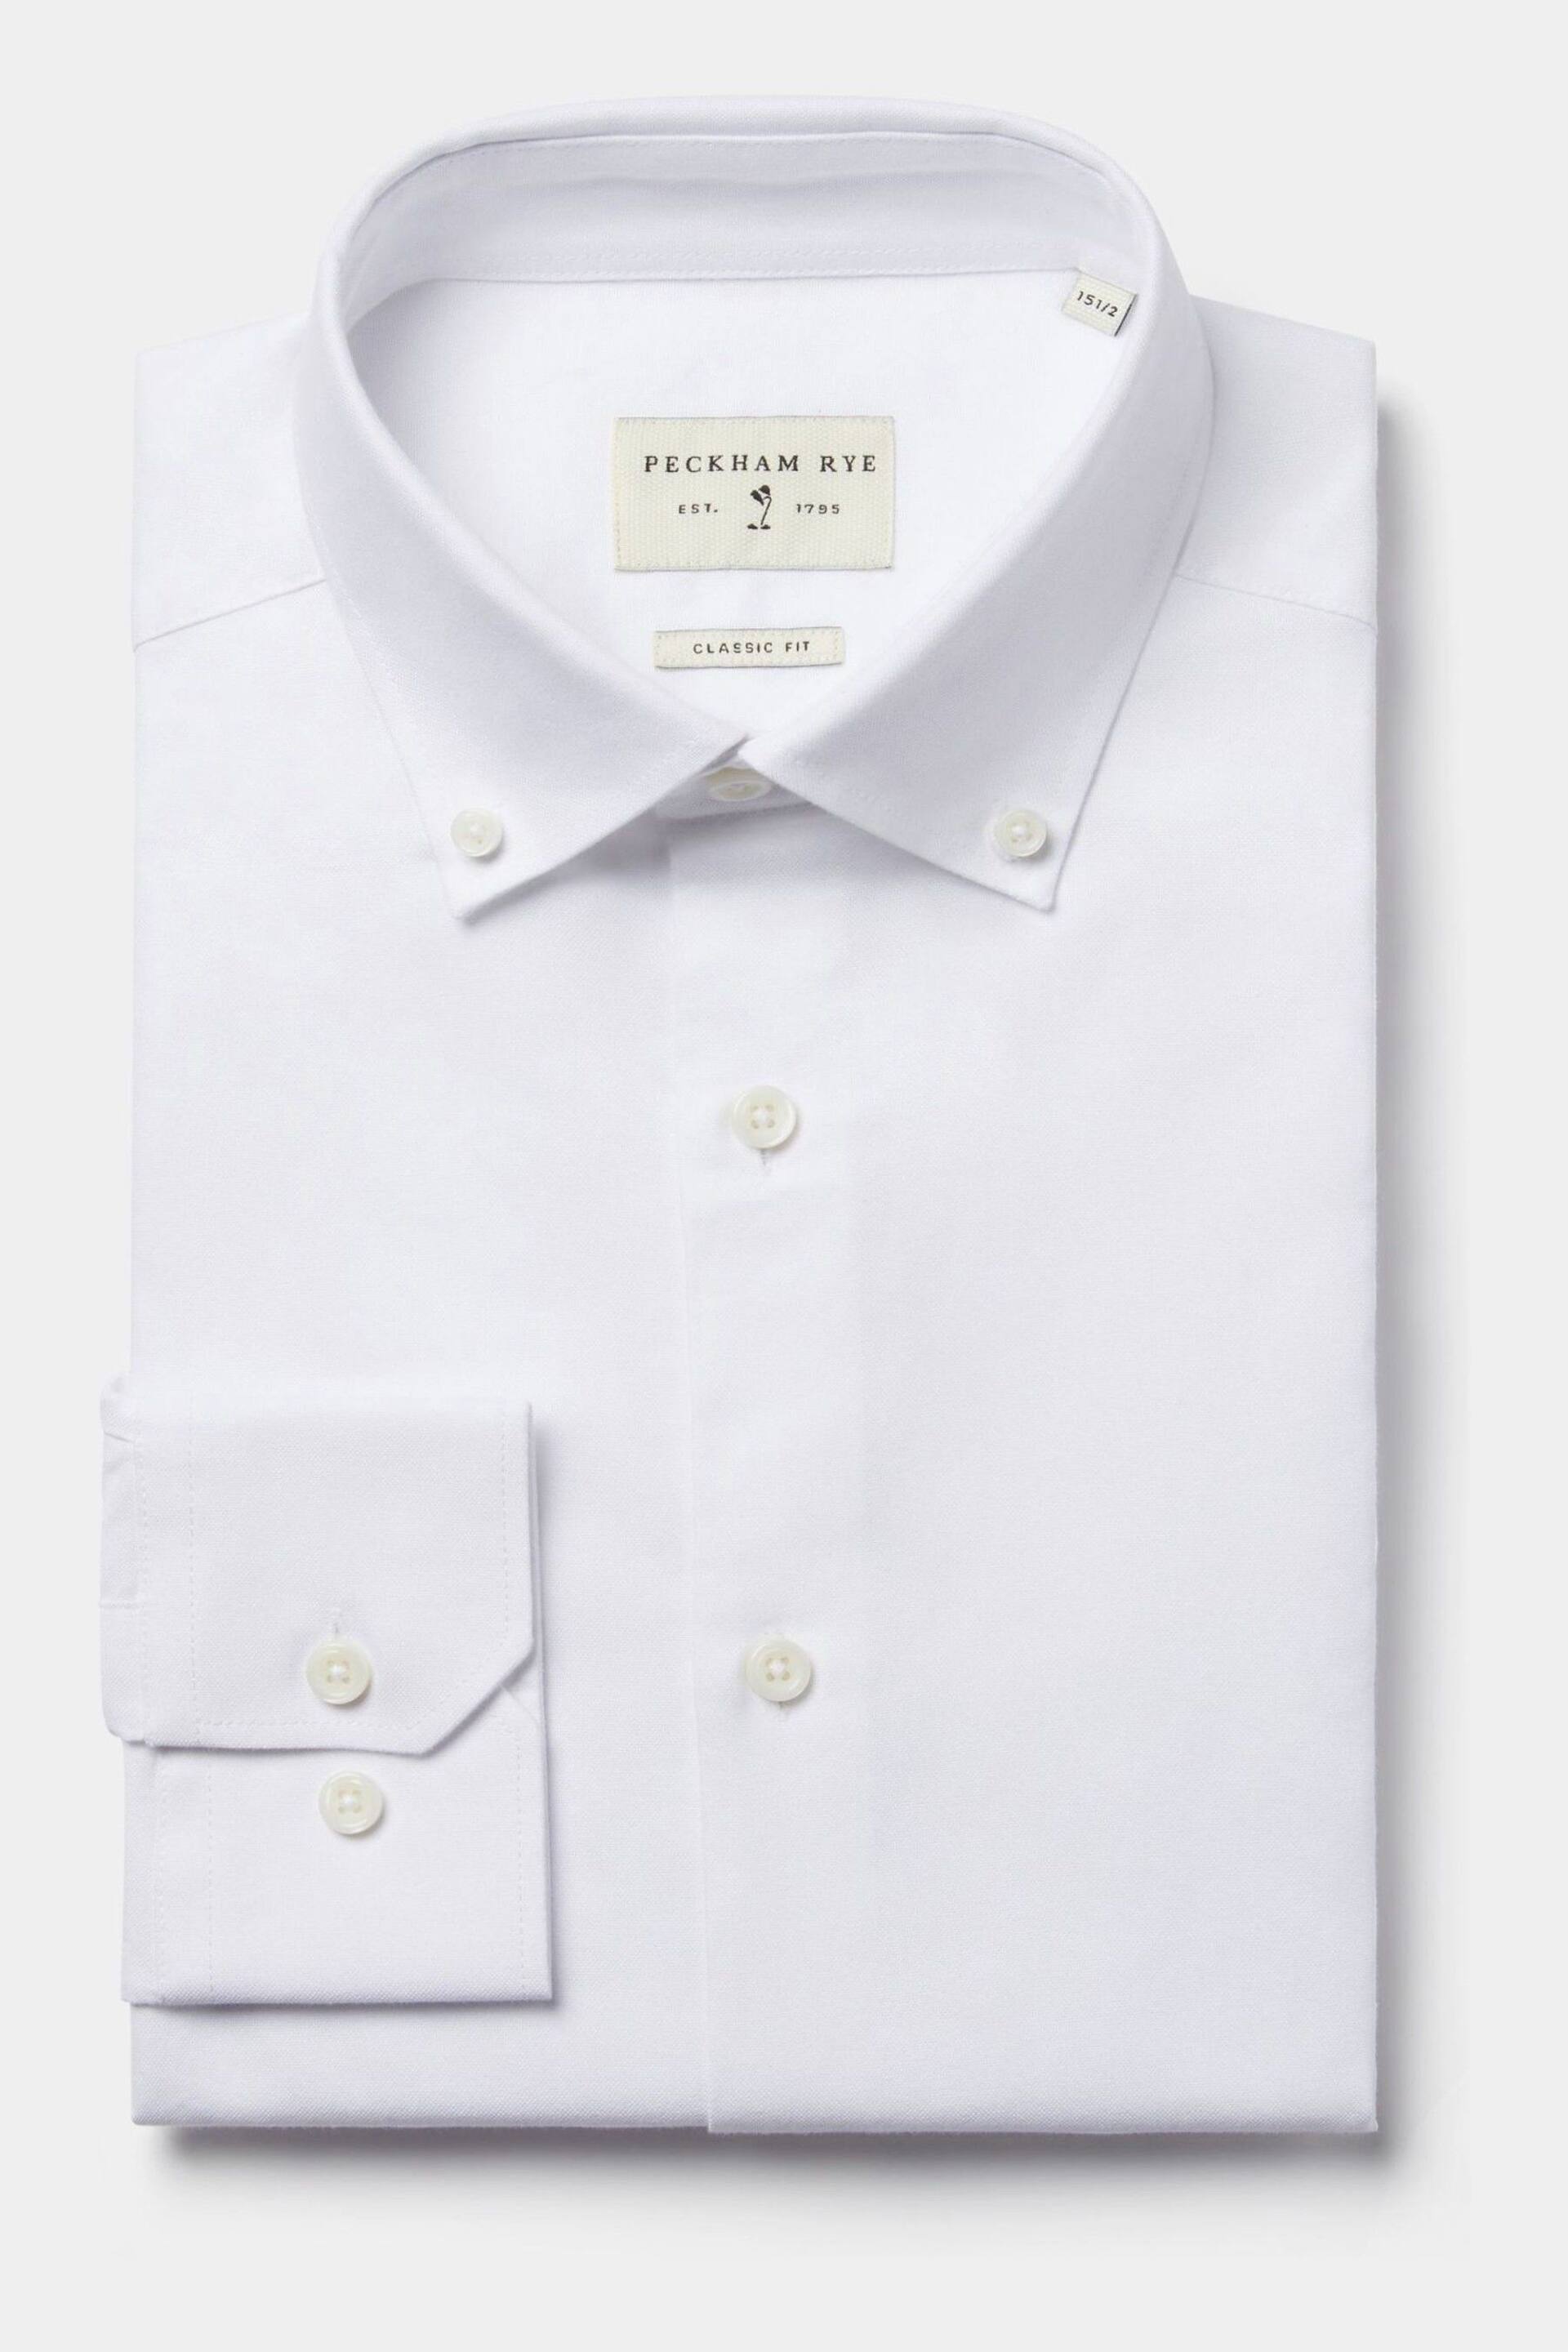 Peckham Rye Oxford Long Sleeve Shirt - Image 5 of 7